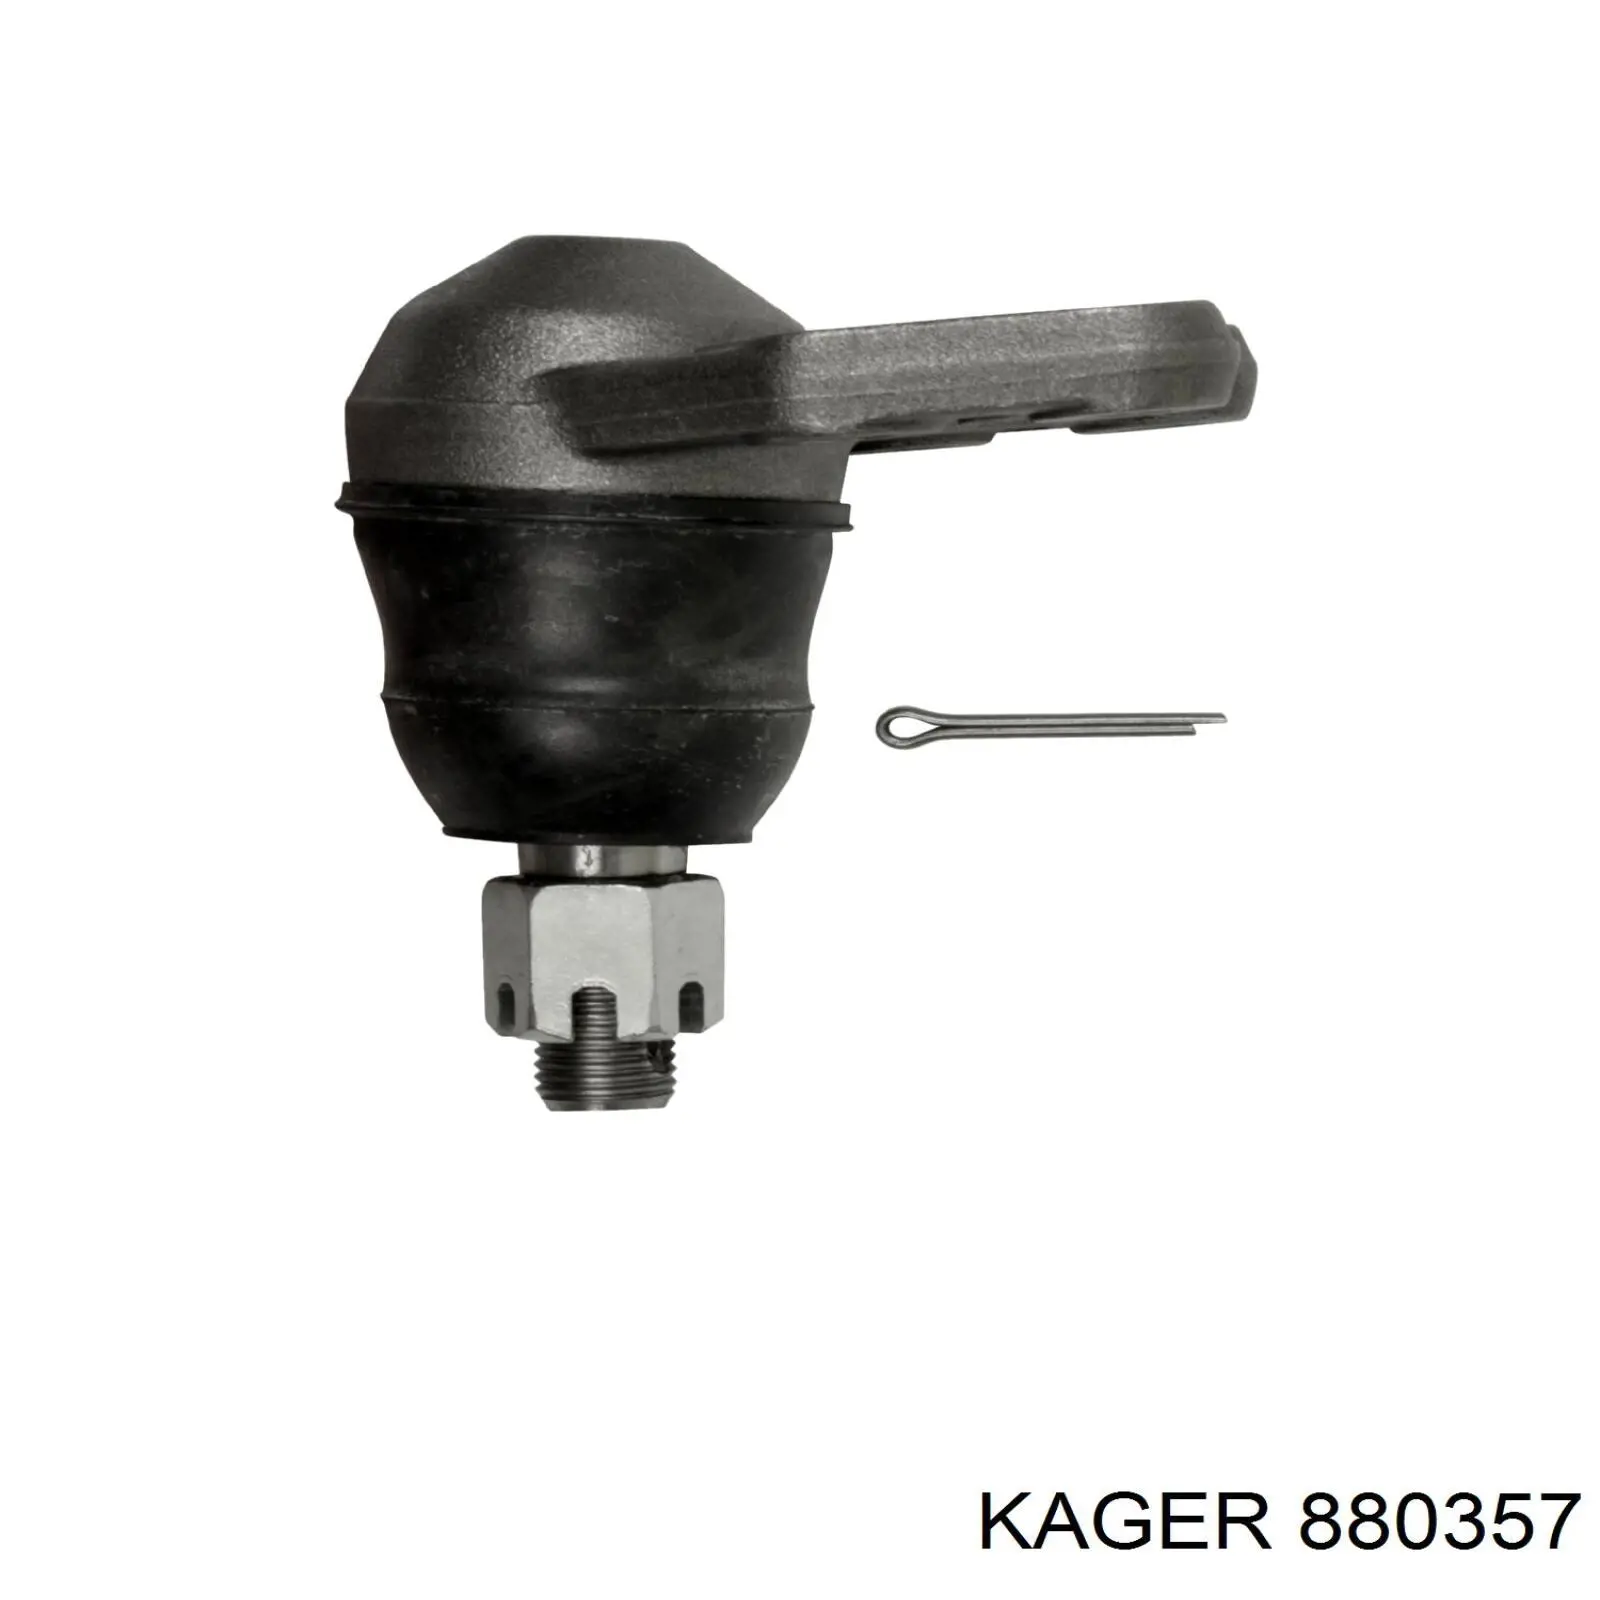 880357 Kager rótula de suspensión inferior